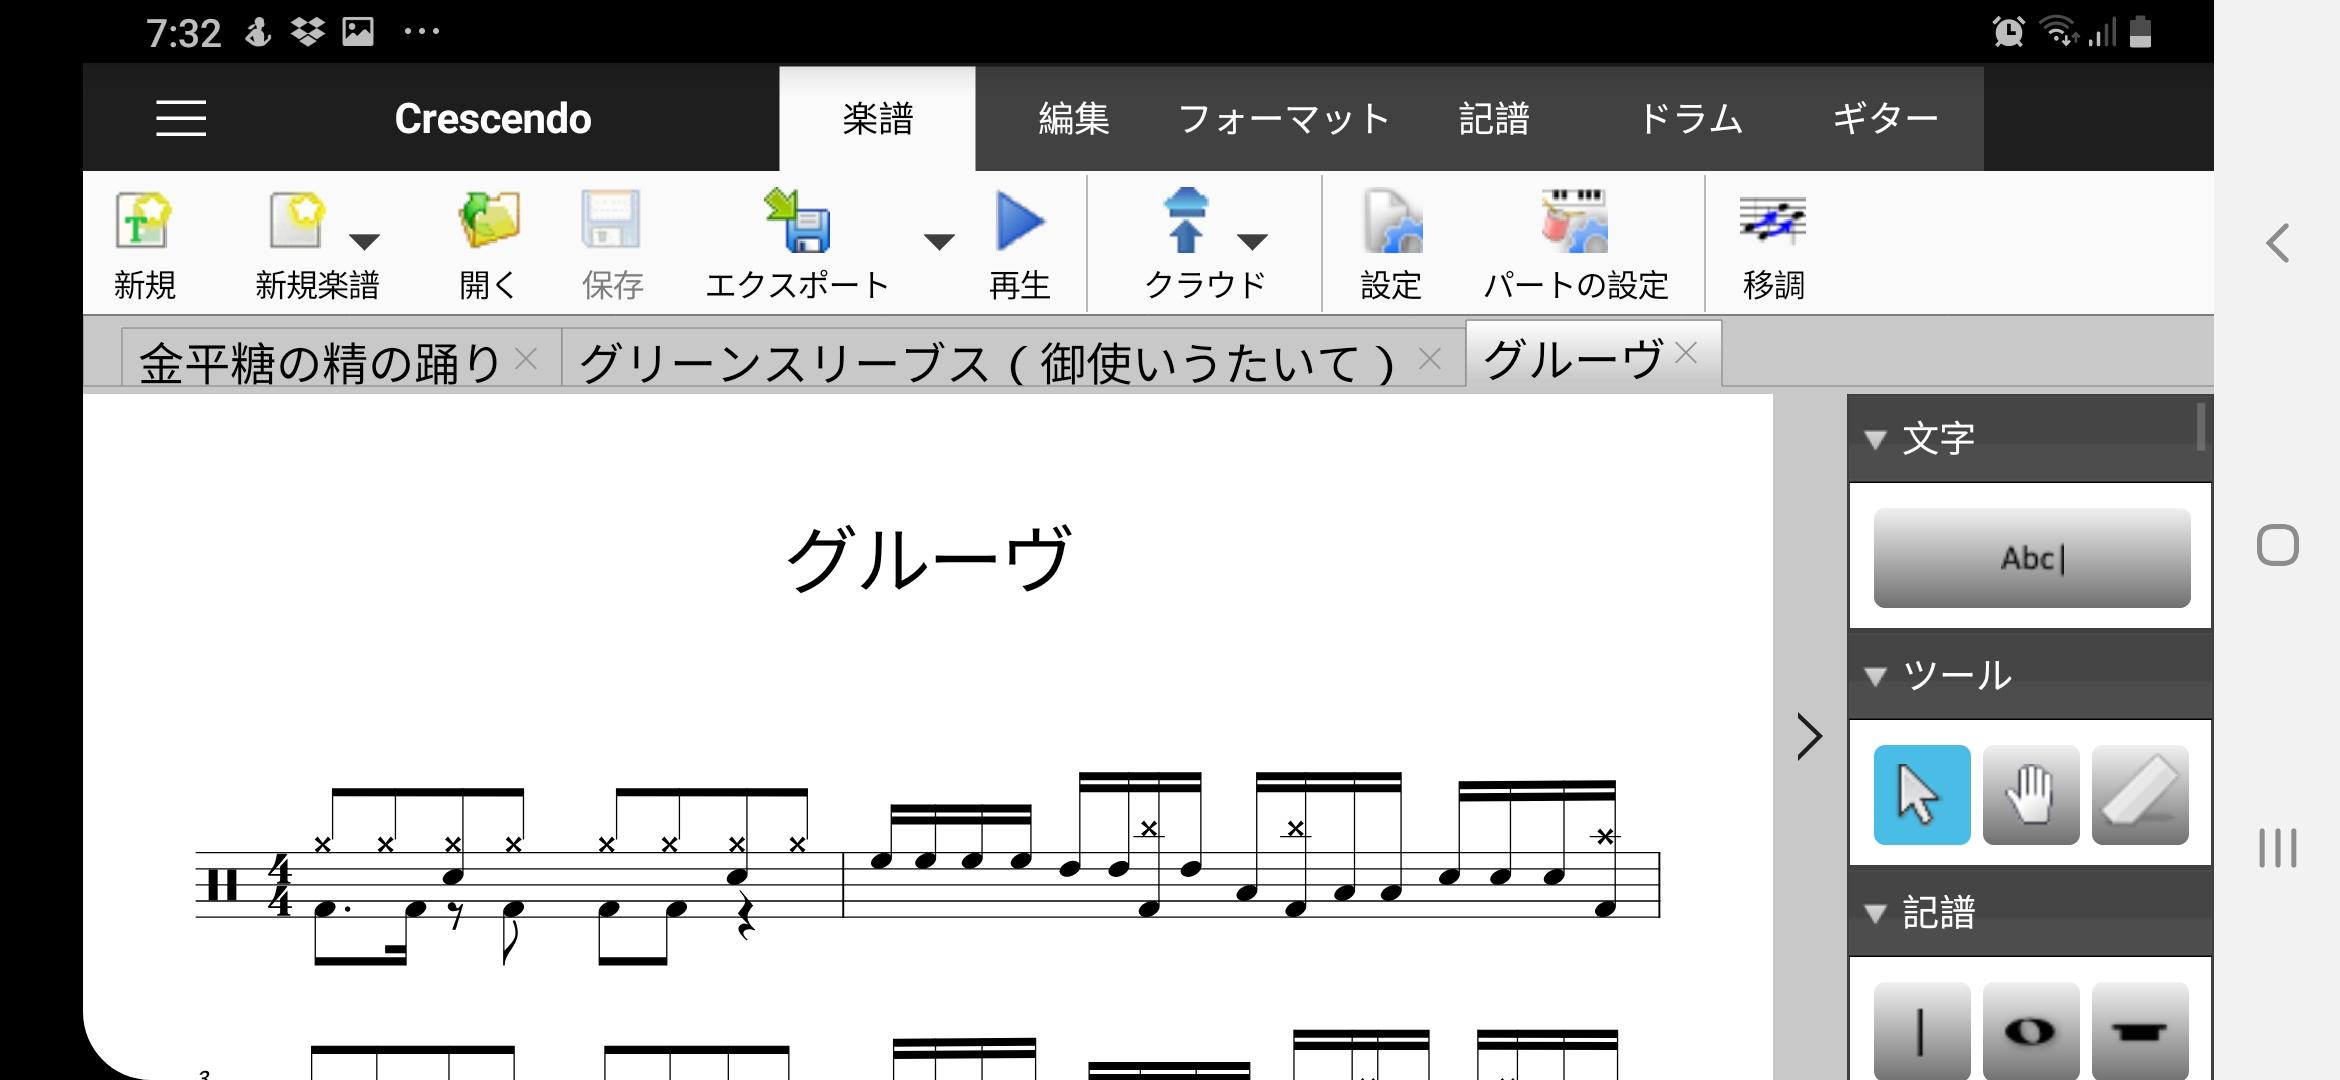 Crescendo楽譜作成アプリ無料版 6.63 Screenshot 4